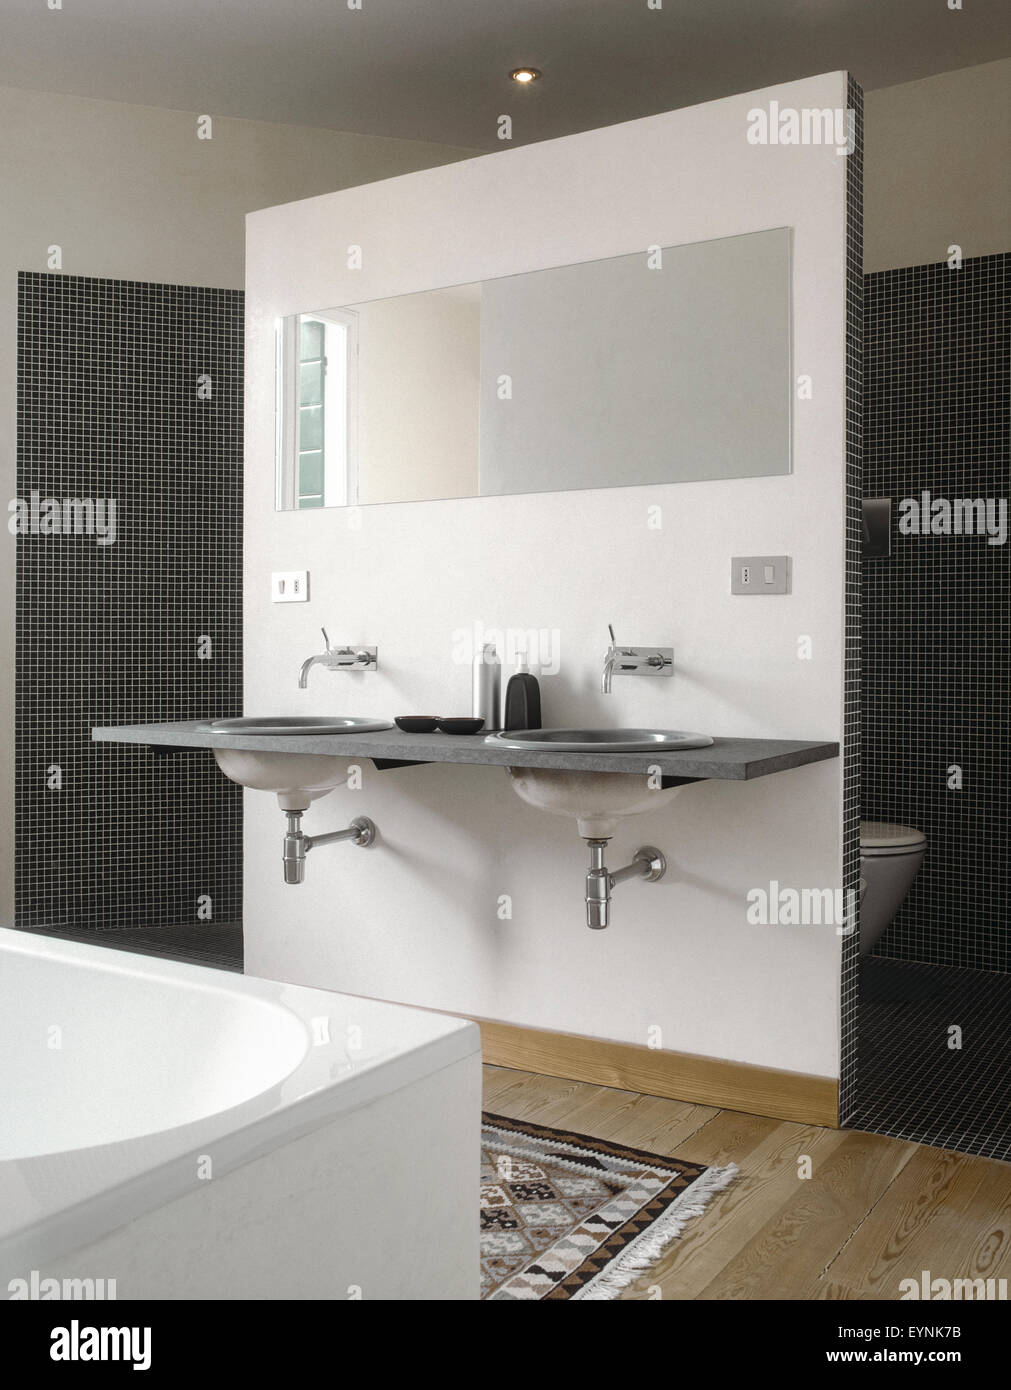 Vista interna di una moderna stanza da bagno in primo piano il bacino di vanità e lo specchio che si affaccia su sanitary ware Foto Stock